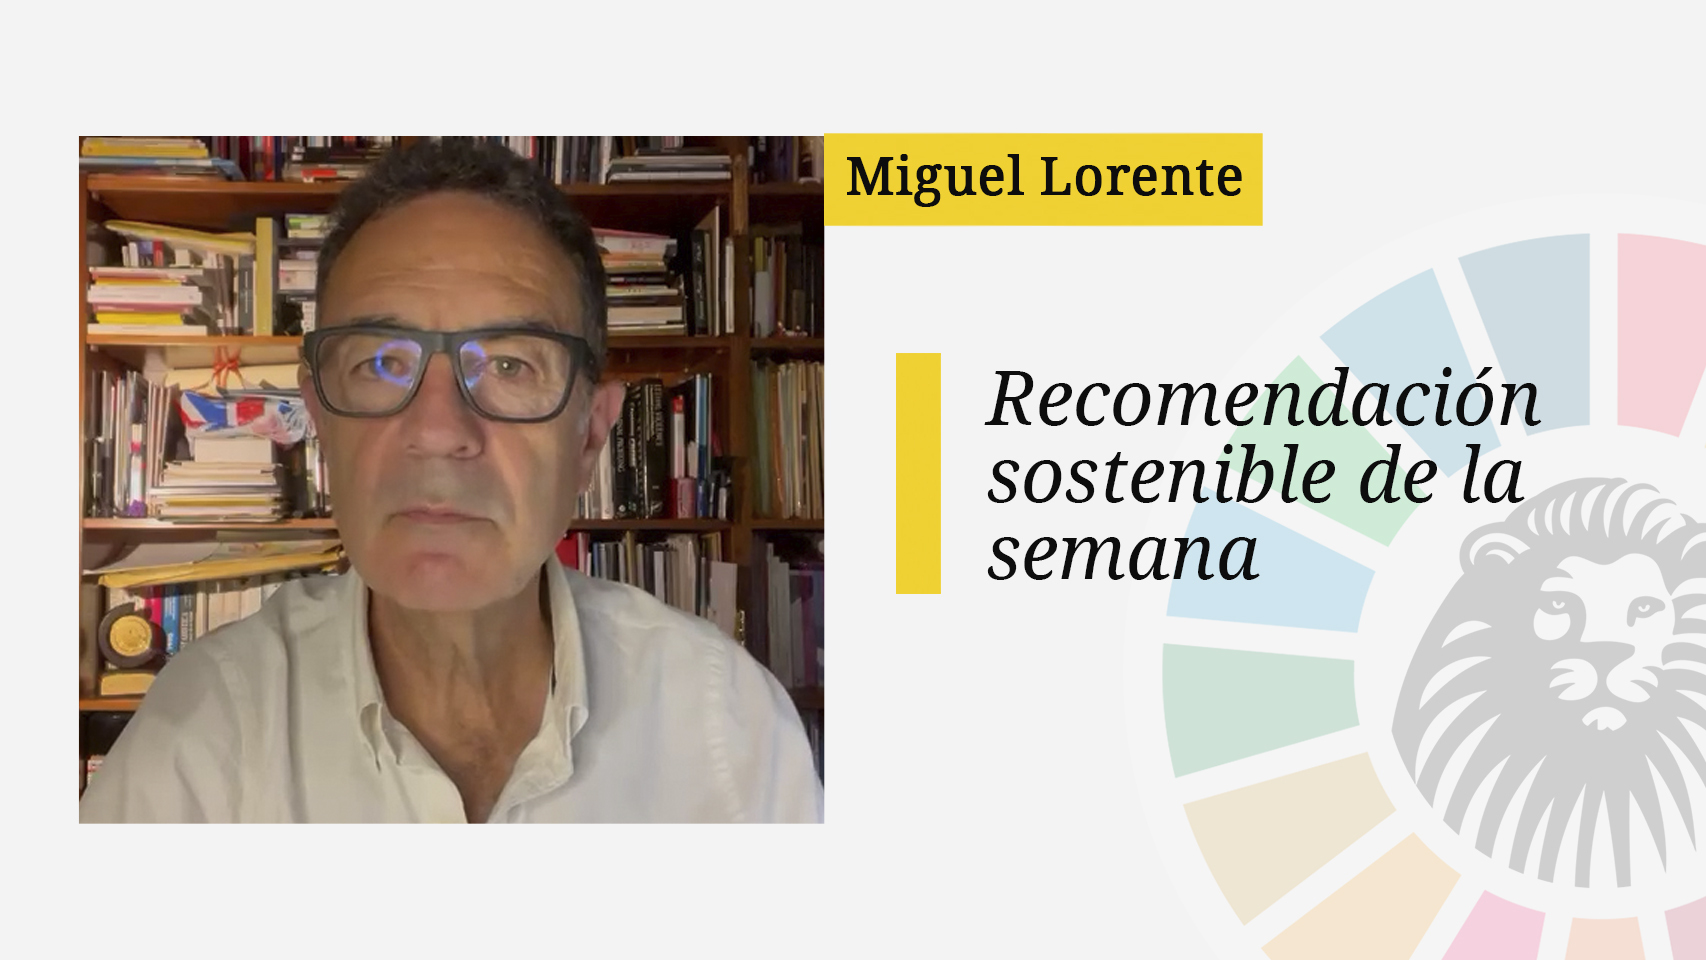 La recomendación sostenible de Miguel Lorente